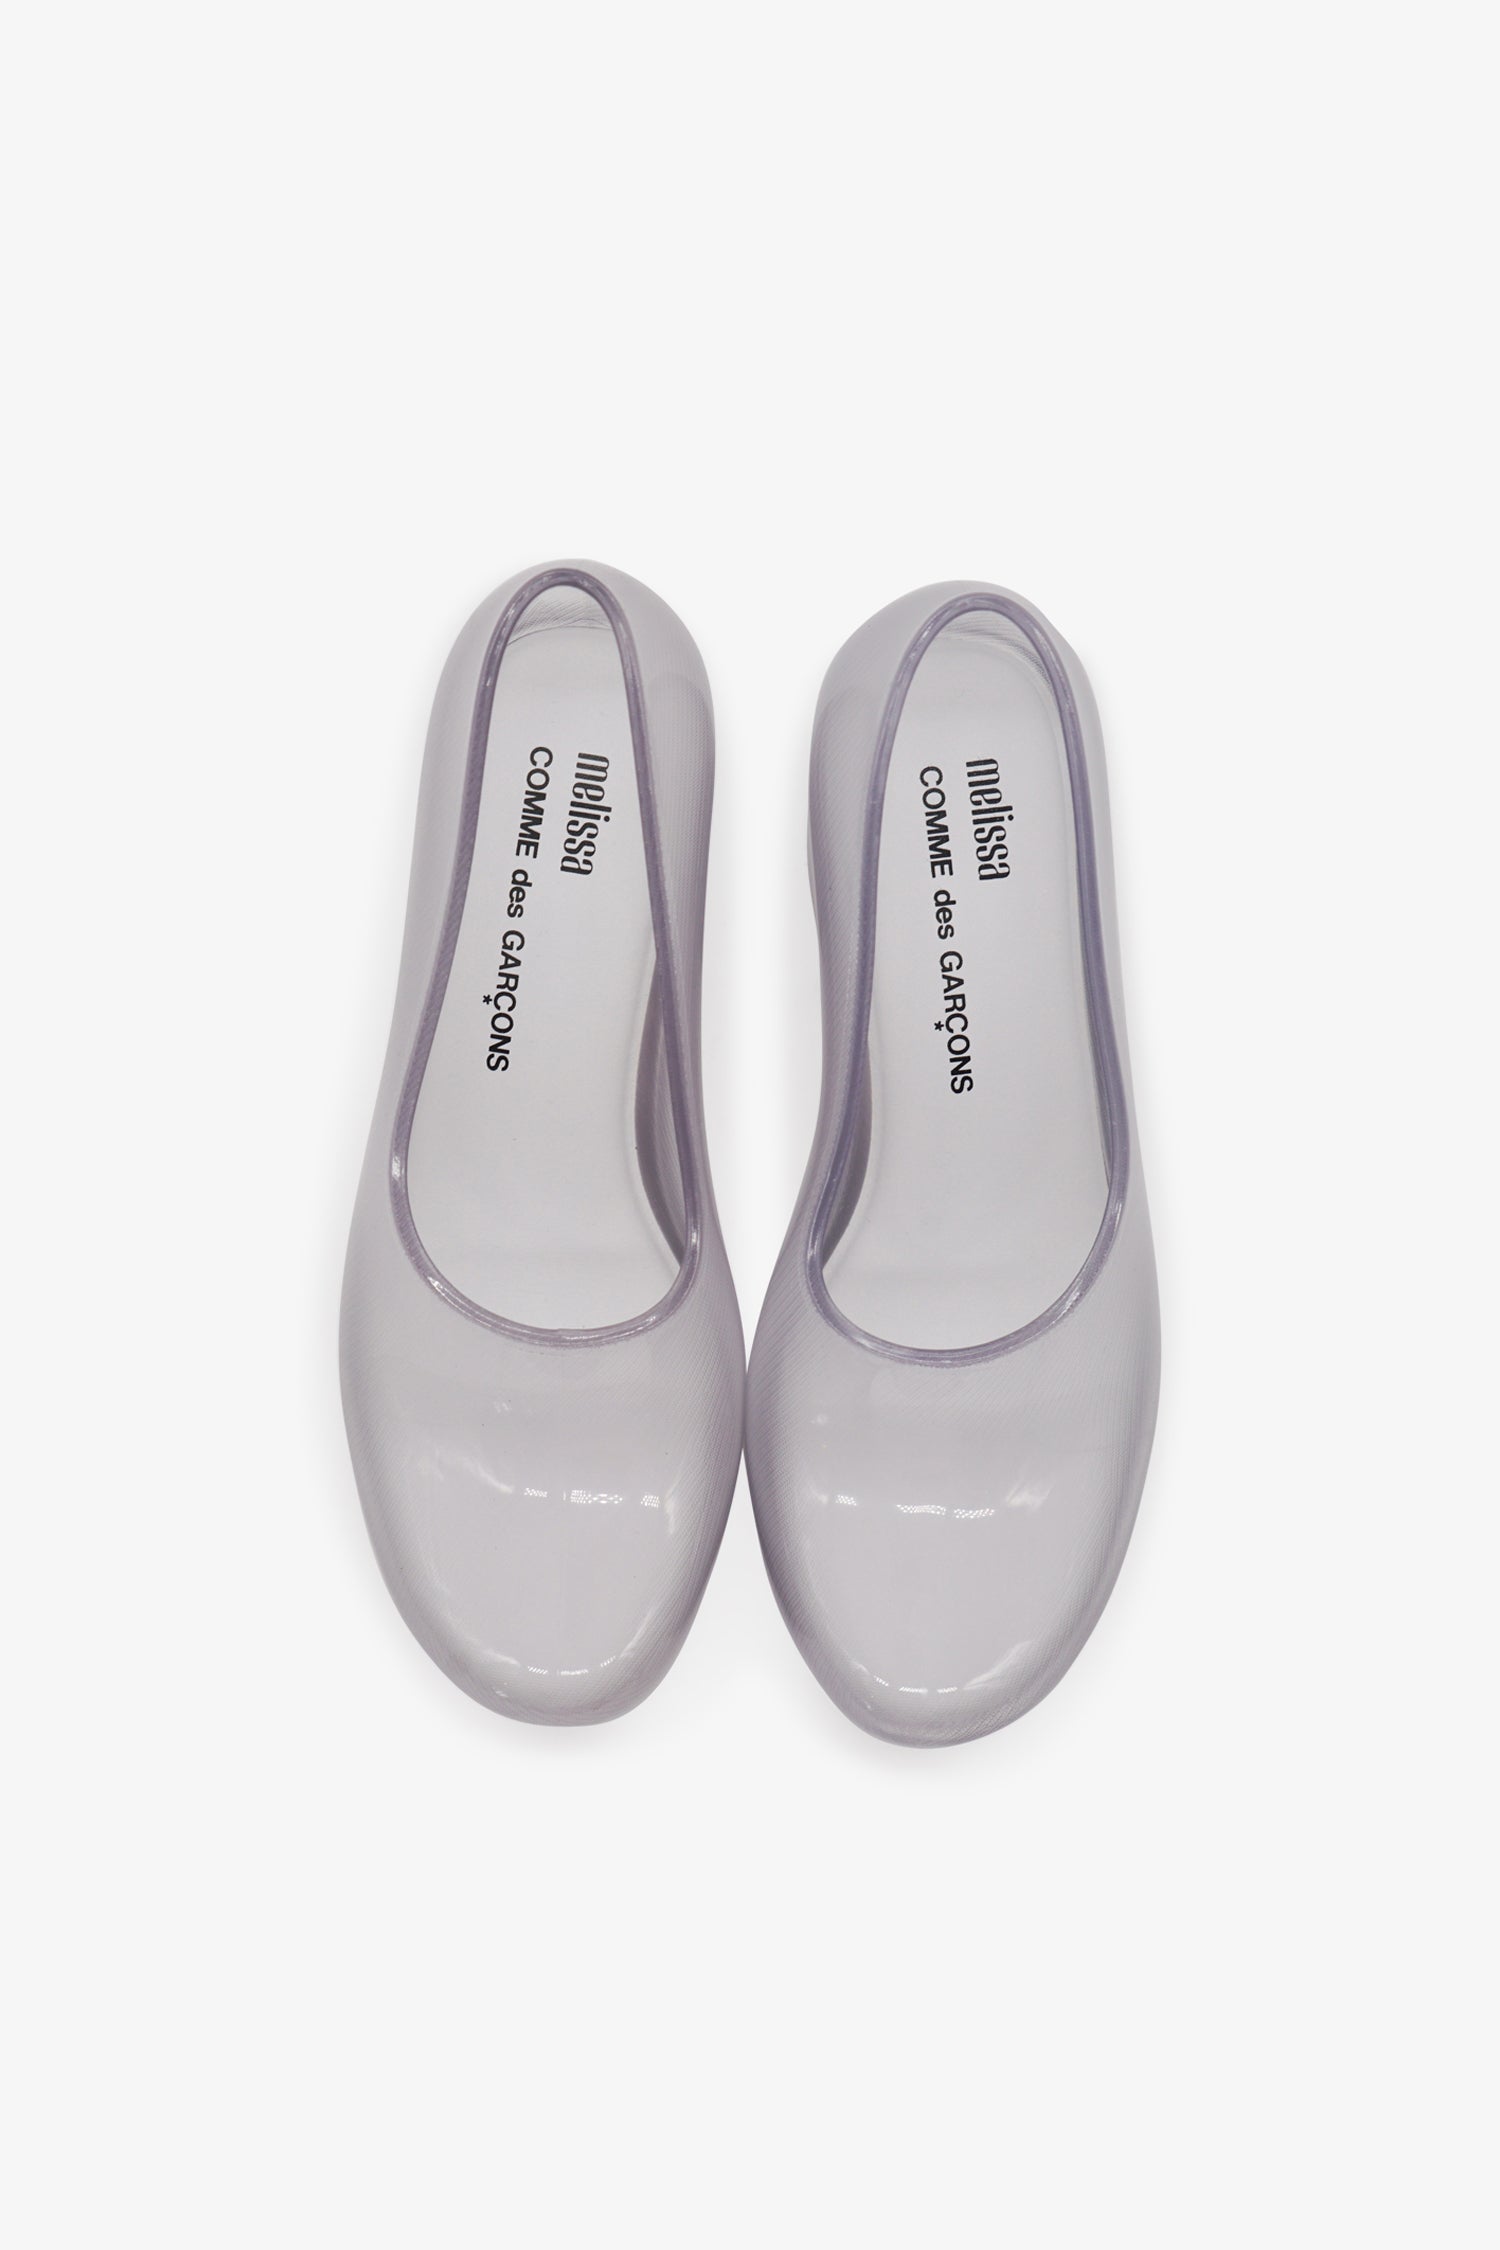 Selectshop FRAME - COMME DES GARÇONS Melissa PVC Heels Footwear Dubai